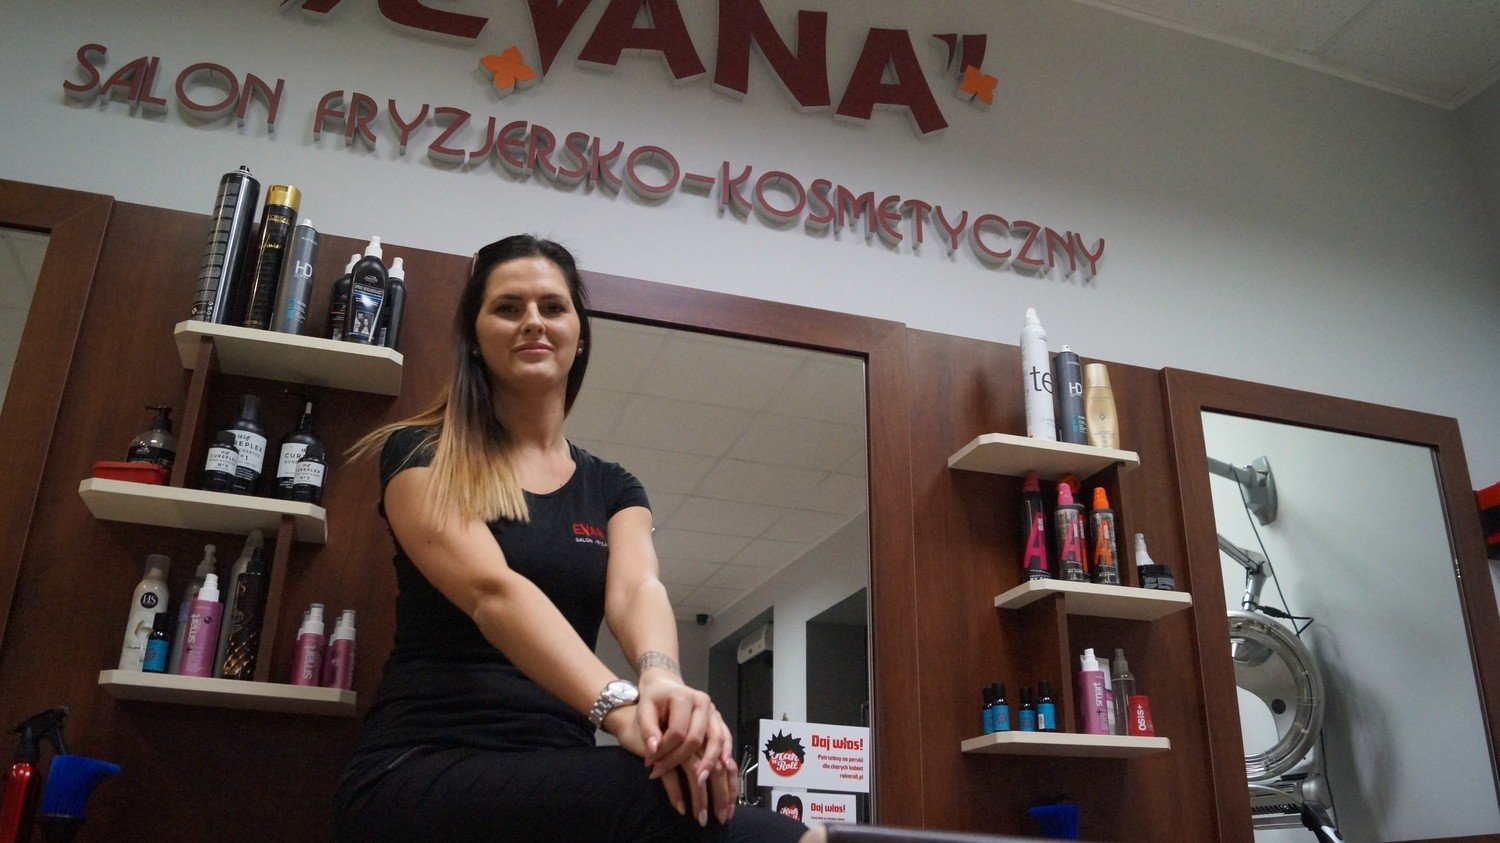 Laur Piękna 2015: Najlepszy salon fryzjerski w Jastrzębiu [ZDJĘCIA] |  Jastrzębie-Zdrój Nasze Miasto